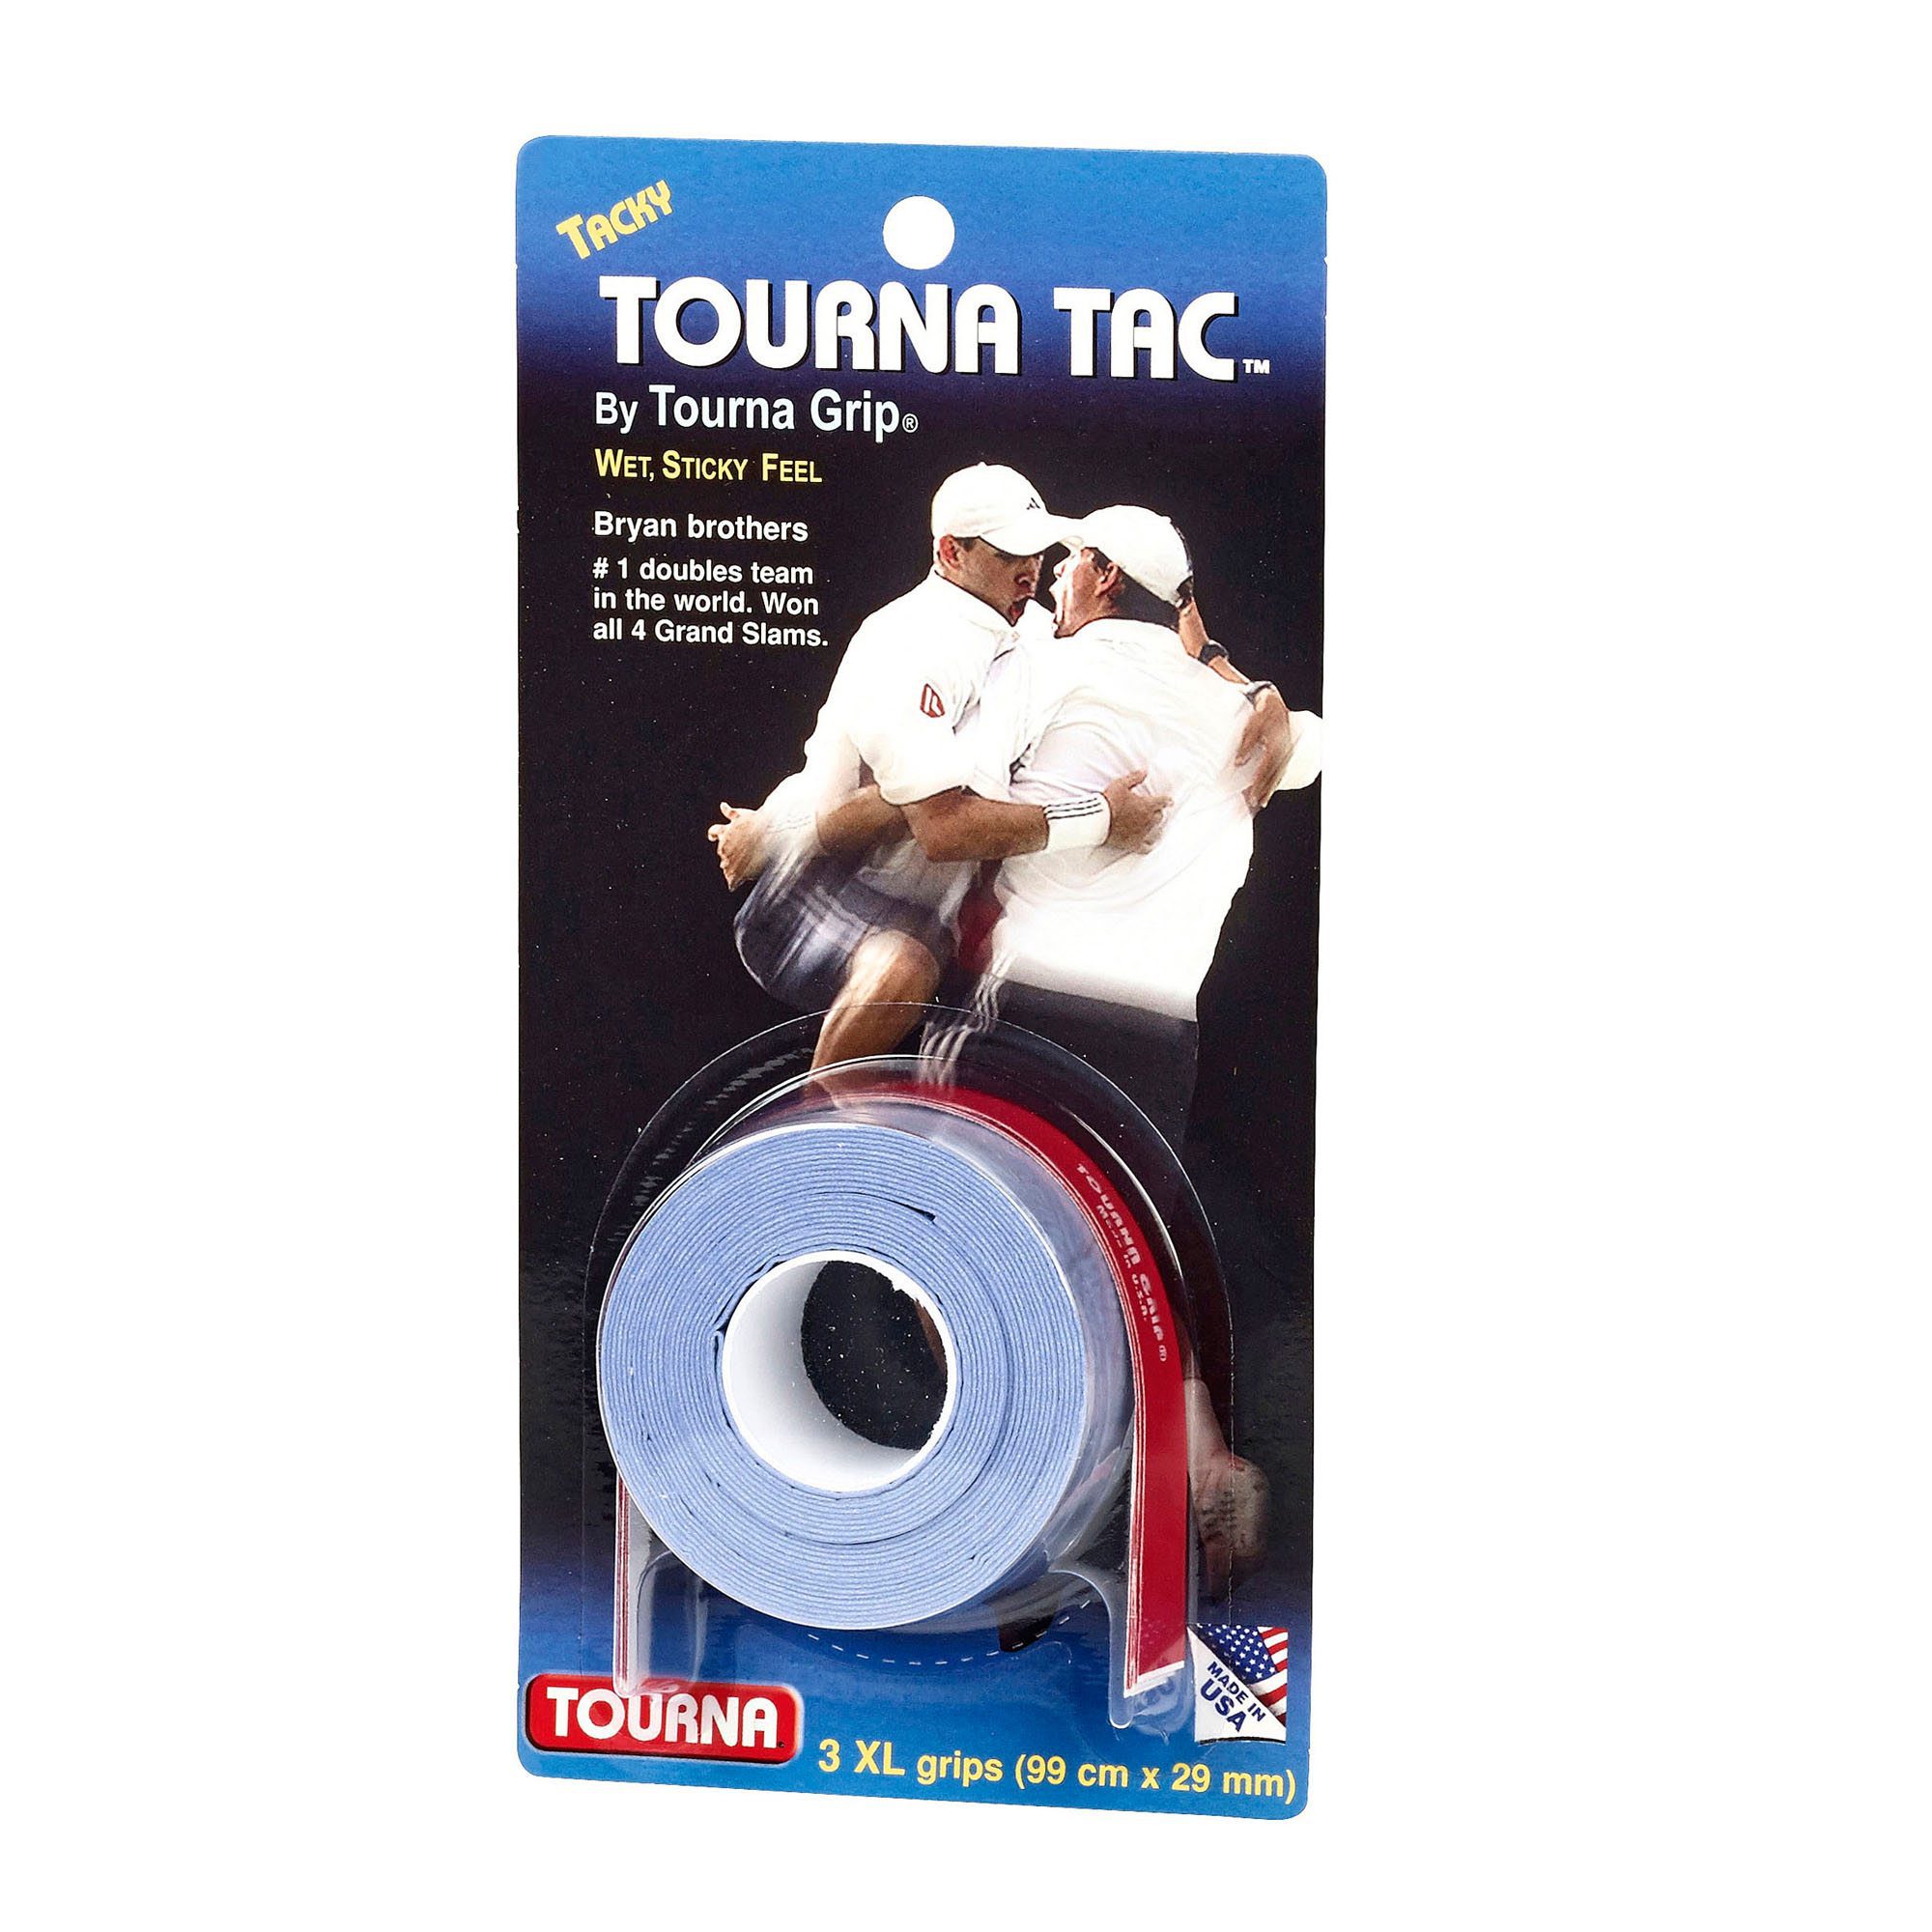 Tourna Tac XL 3 Pack Pls read description Wet Sticky tennis squash Bmtn 